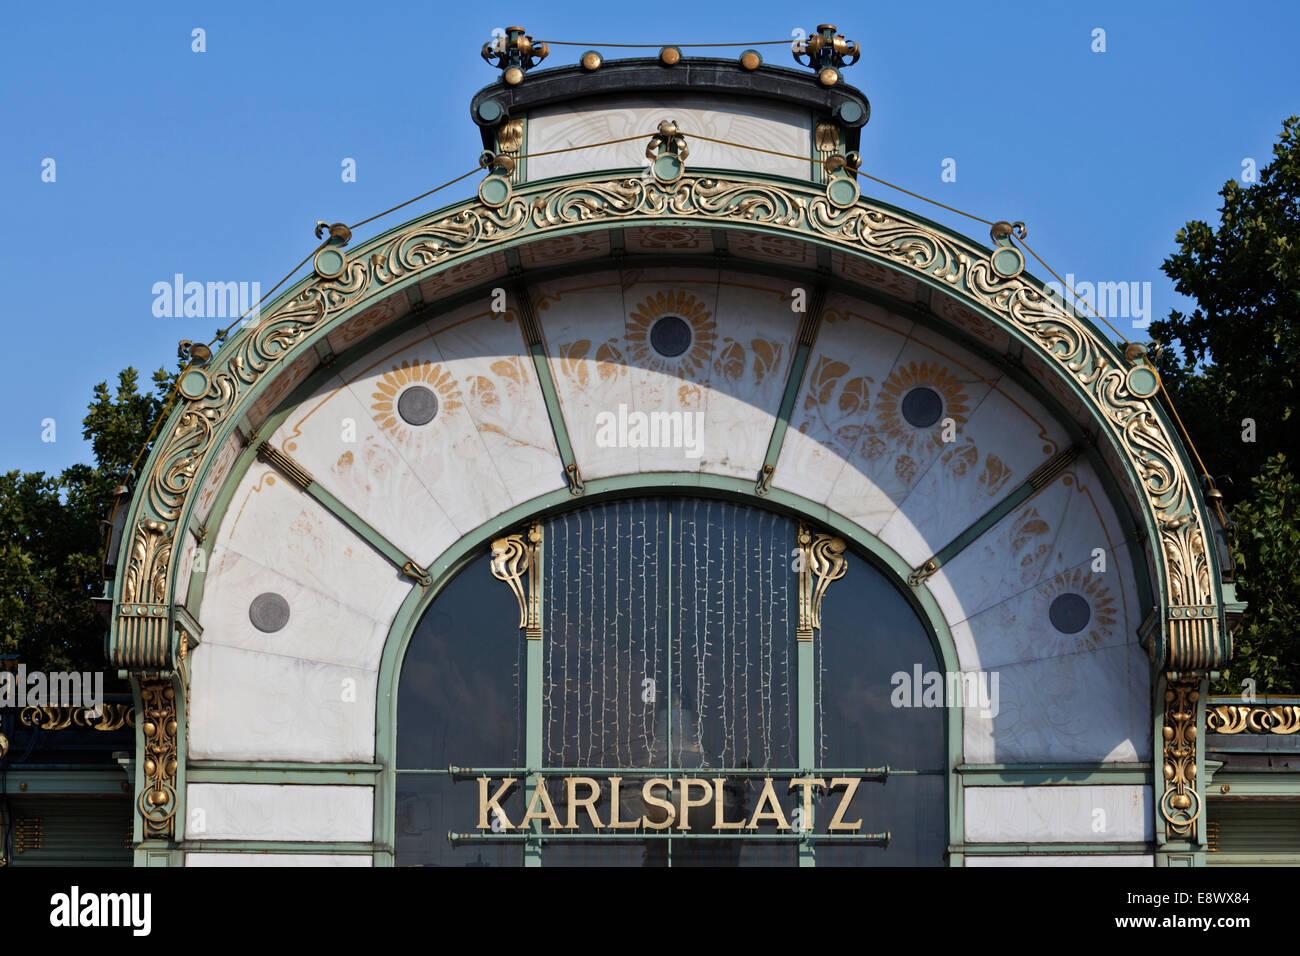 Facade detail of Karlsplatz underground station cafe 1898, Vienna, Austria Stock Photo